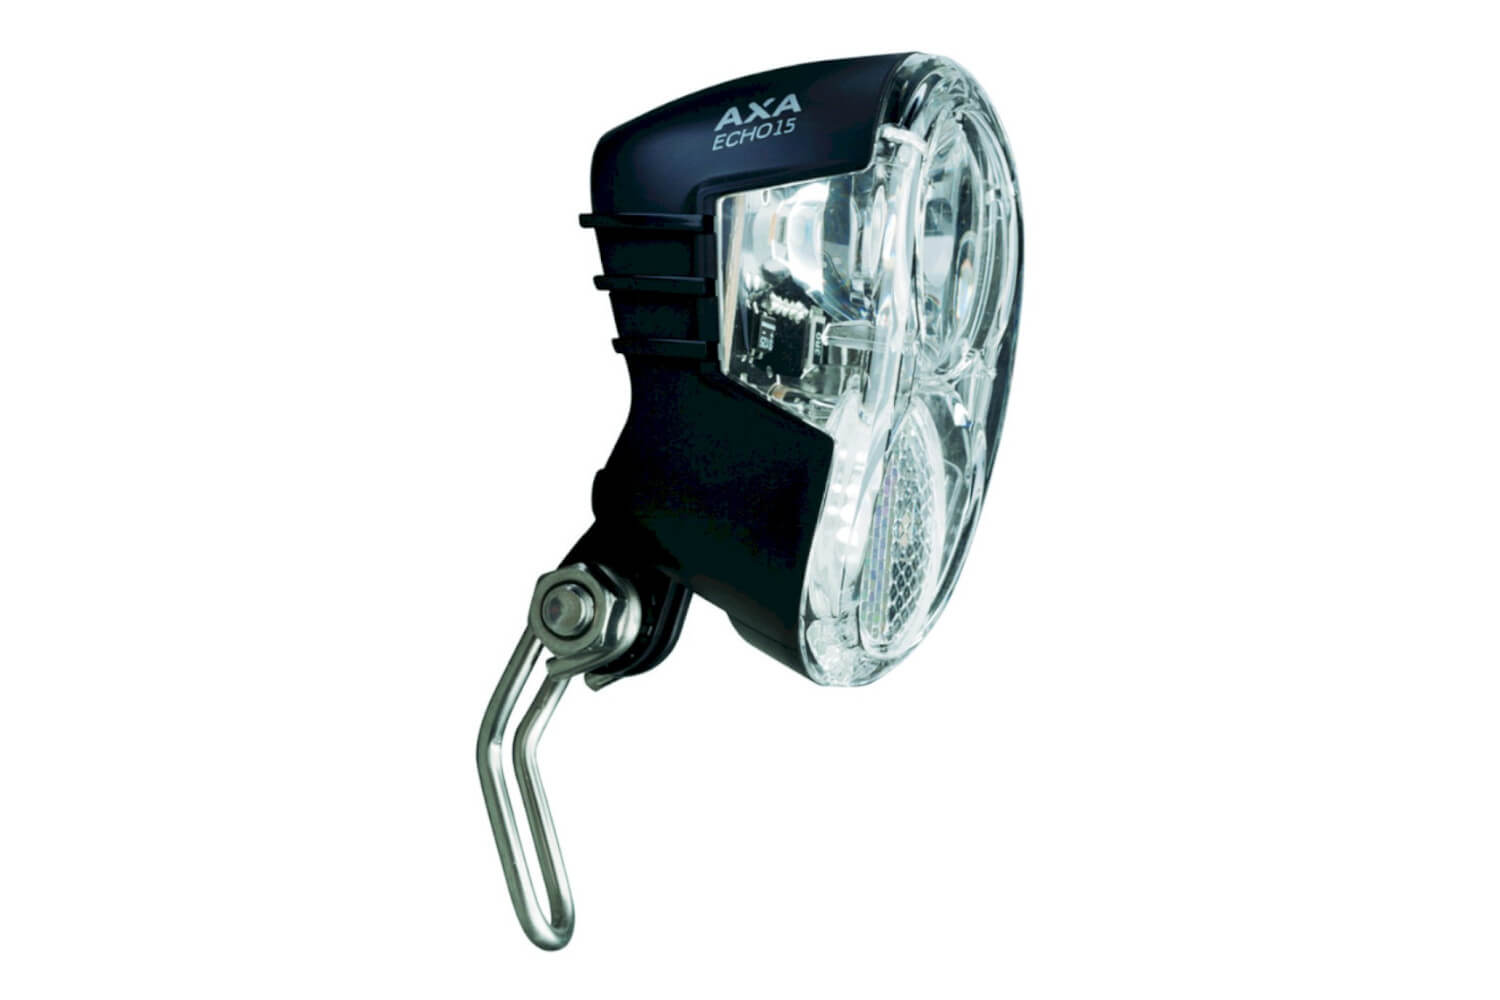 AXA Scheinwerfer LED 15 LUX von AXA